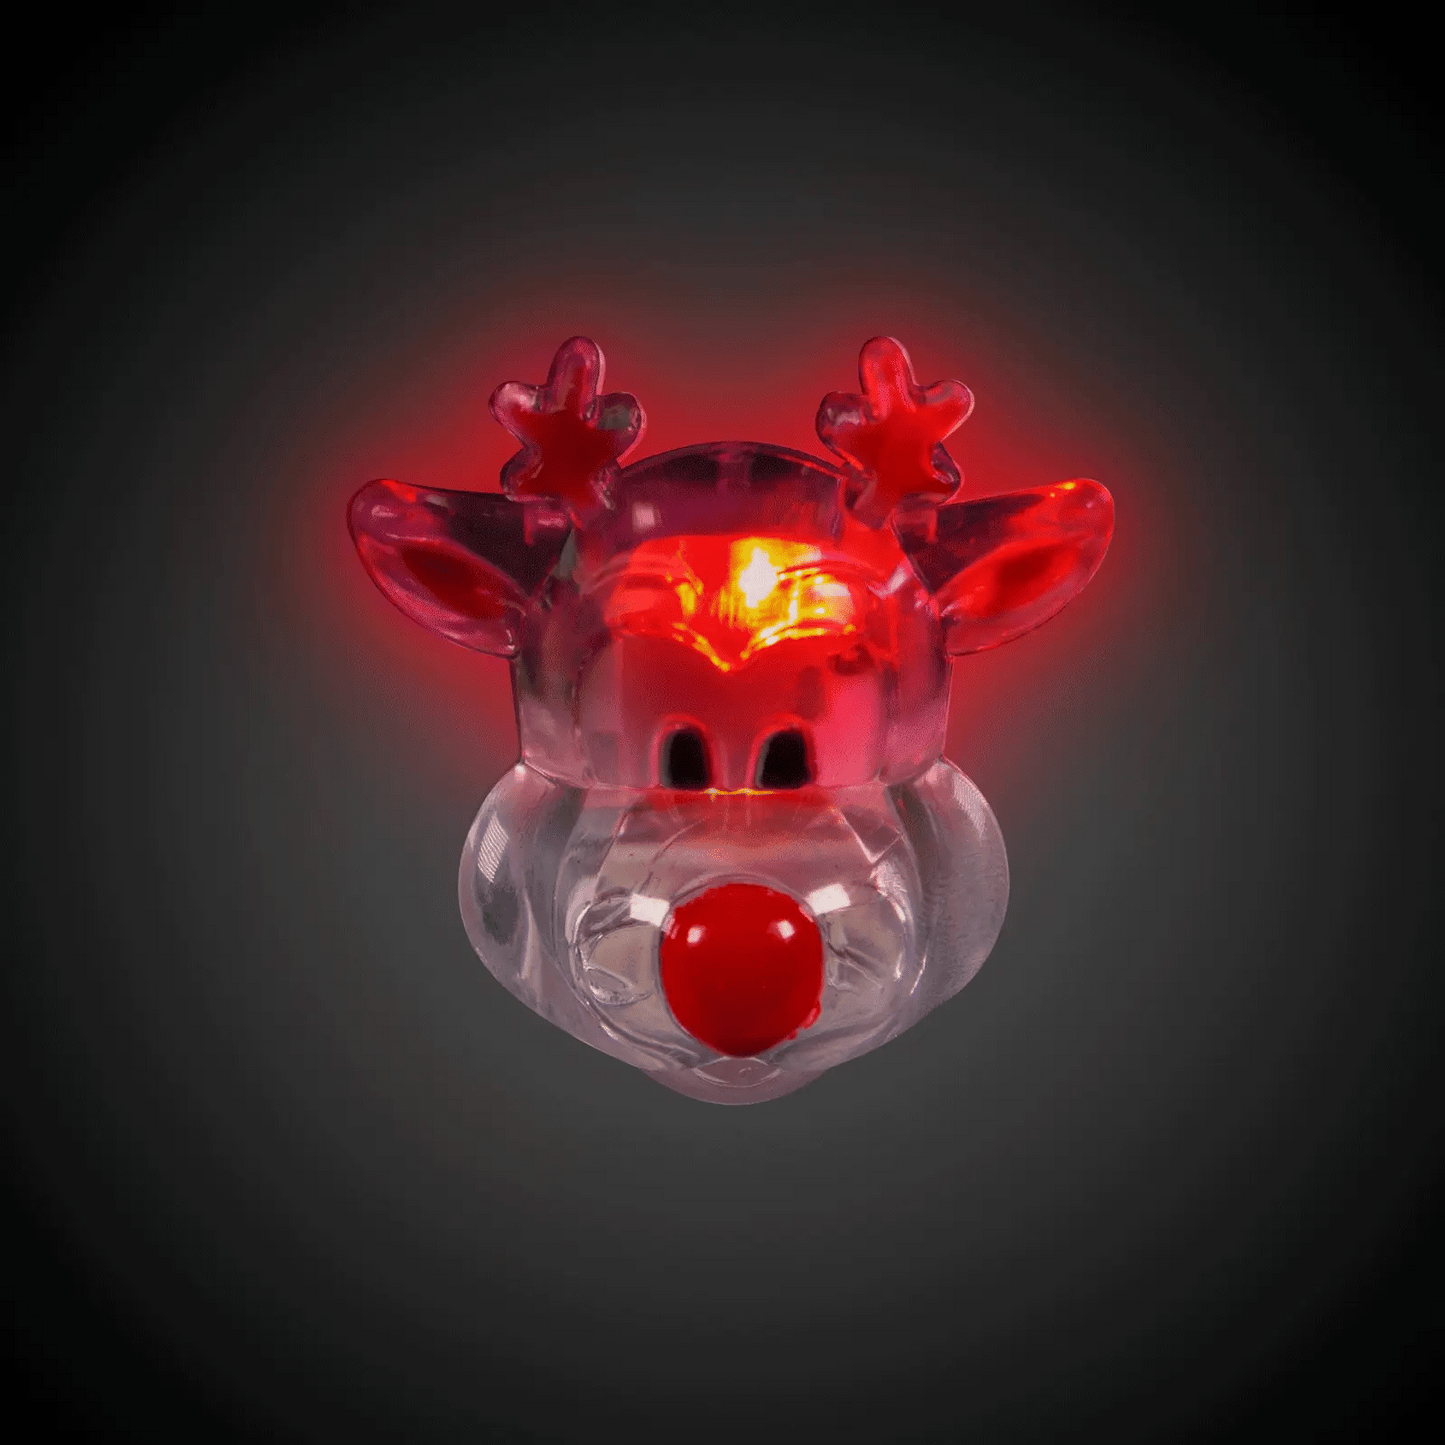 LED Flashing Reindeer Pin